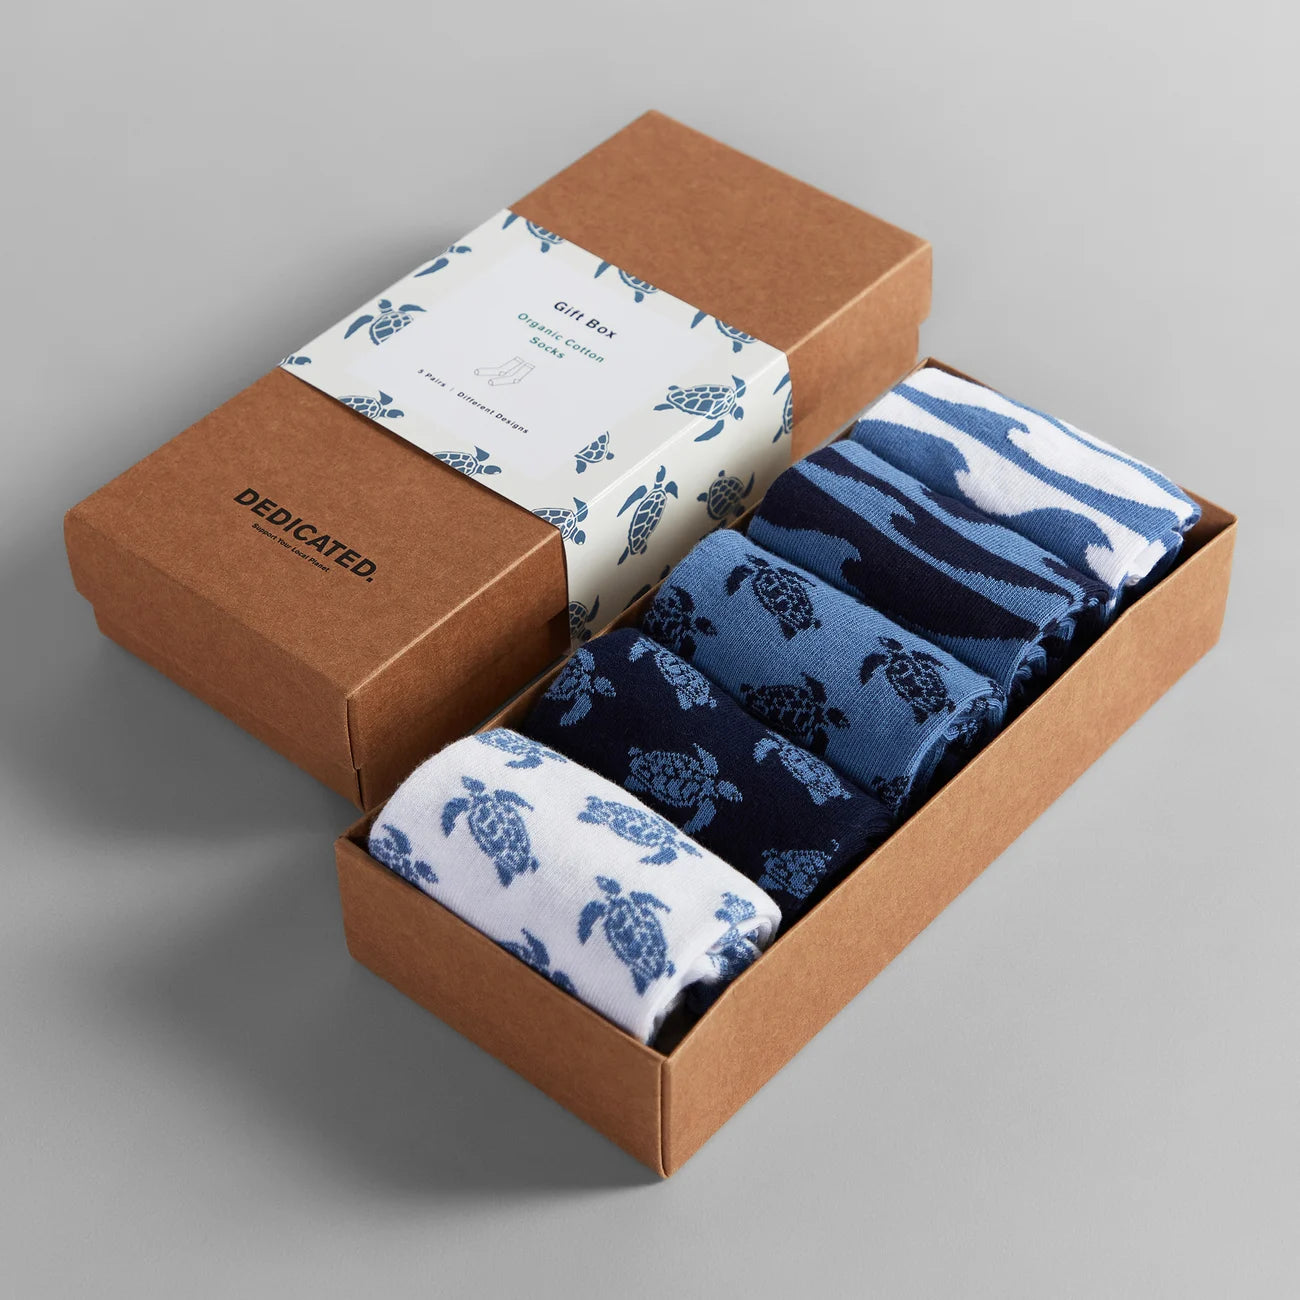 Socks Sigtuna Ocean 5-pack - Multi Color